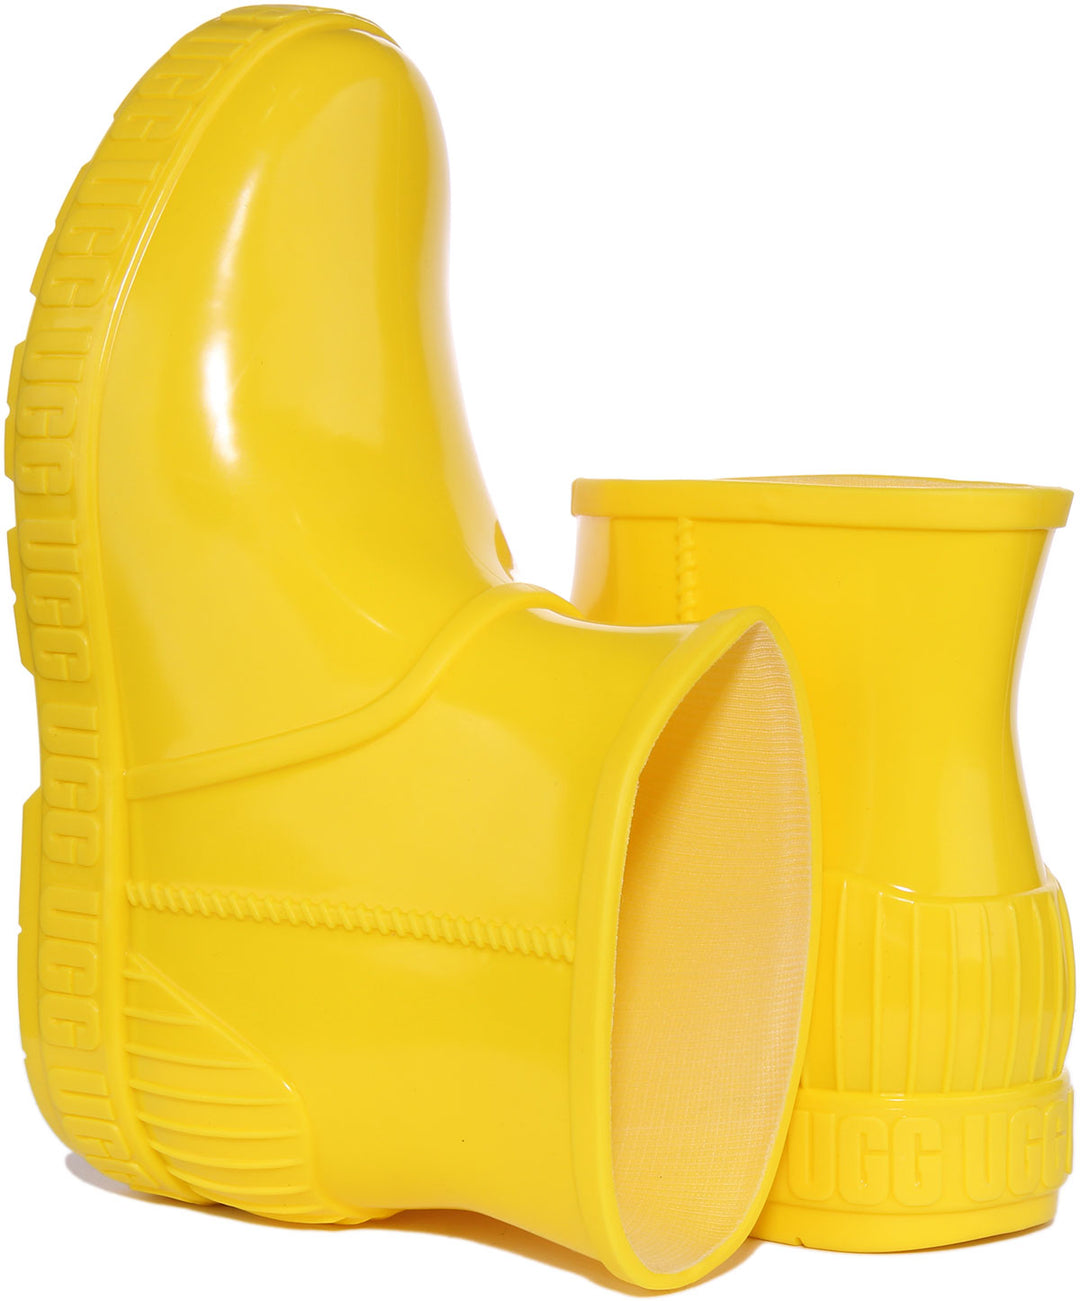 Ugg Drizlita Botte synthétique imperméable pour jeunes en jaune